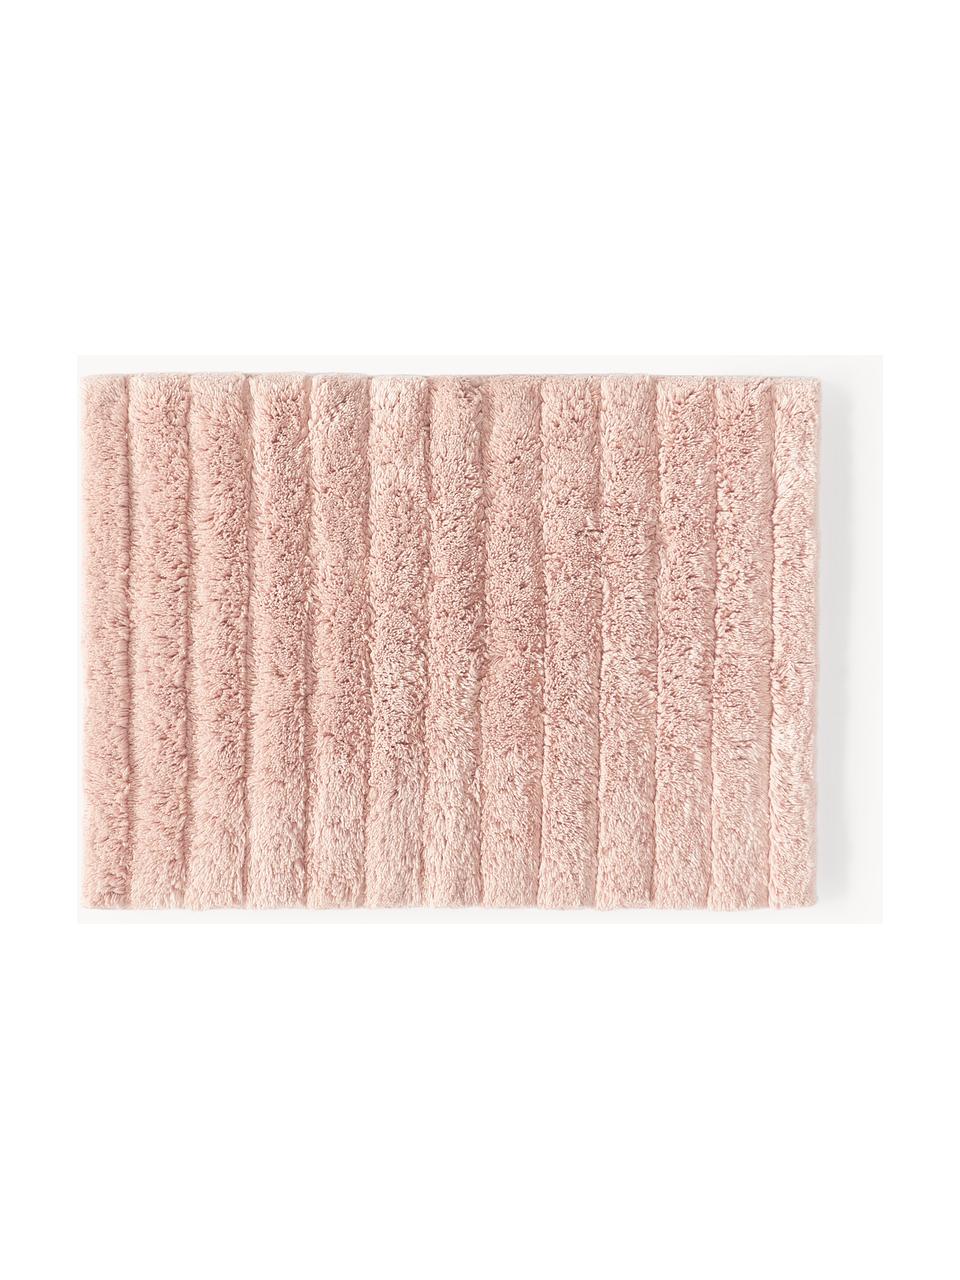 Puszysty dywanik łazienkowy Bailey, 100% bawełna

Ten produkt został przetestowany pod kątem substancji szkodliwych i certyfikowany zgodnie z STANDARD 100 by OEKO-TEX®21.HIN.45298 HOHENSTEIN HTTI, Jasny różowy, S 50 x D 70 cm